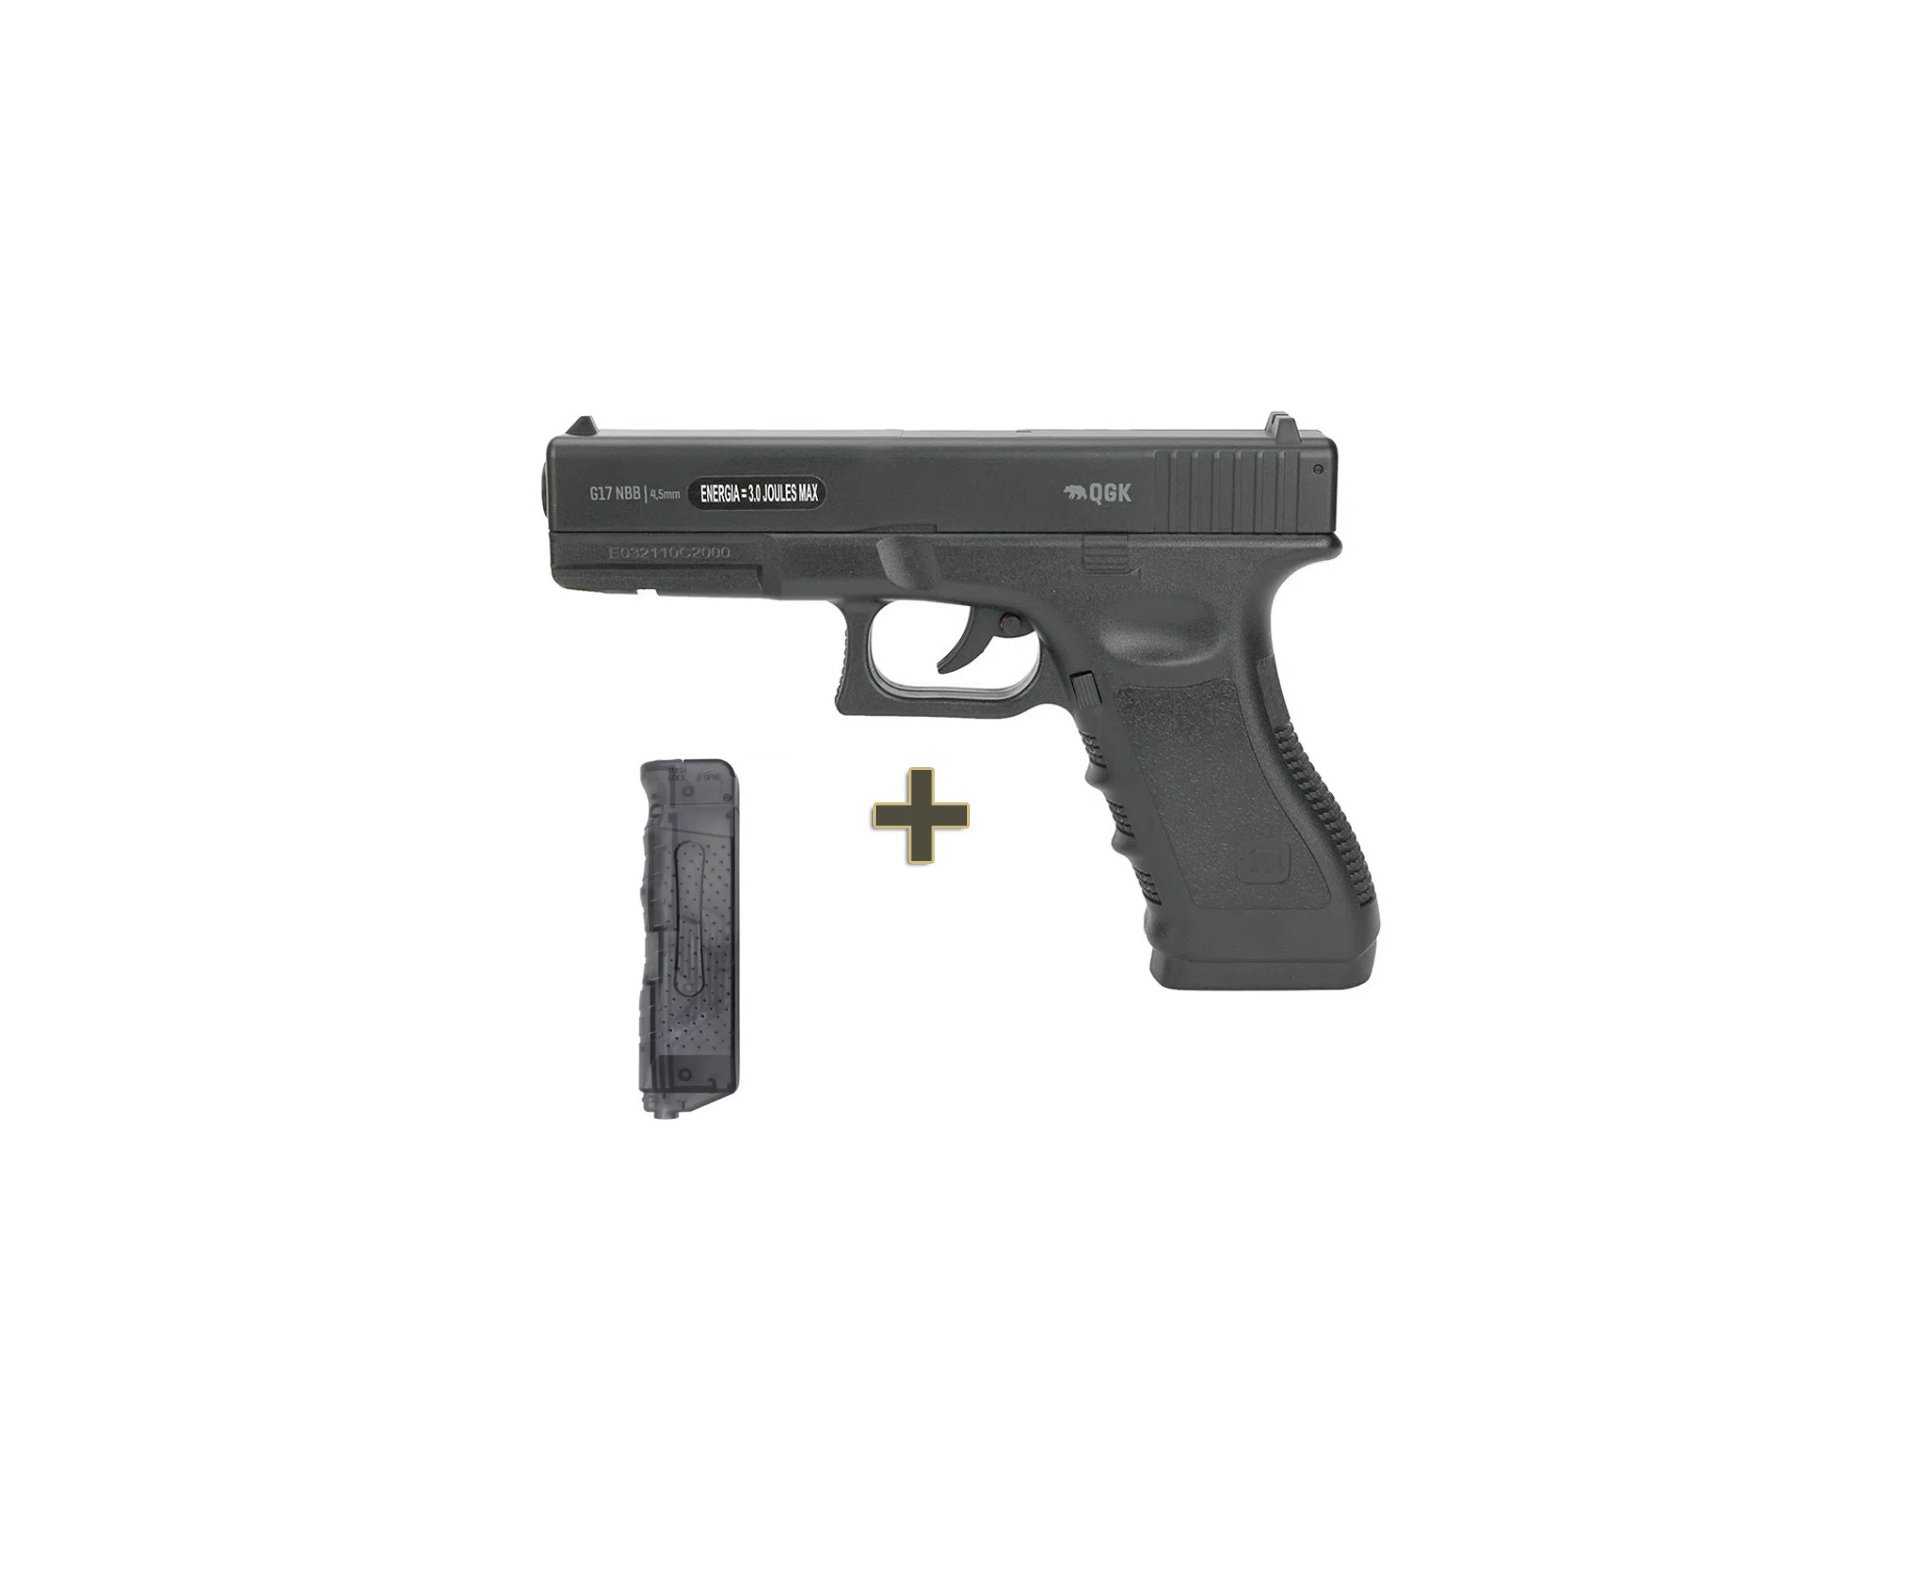 Pistola de Pressão Gás CO2 Glock G17 4,5mm QGK + Speed Loader Carregador Rápido 4,5mm .177 Esfera de Aço